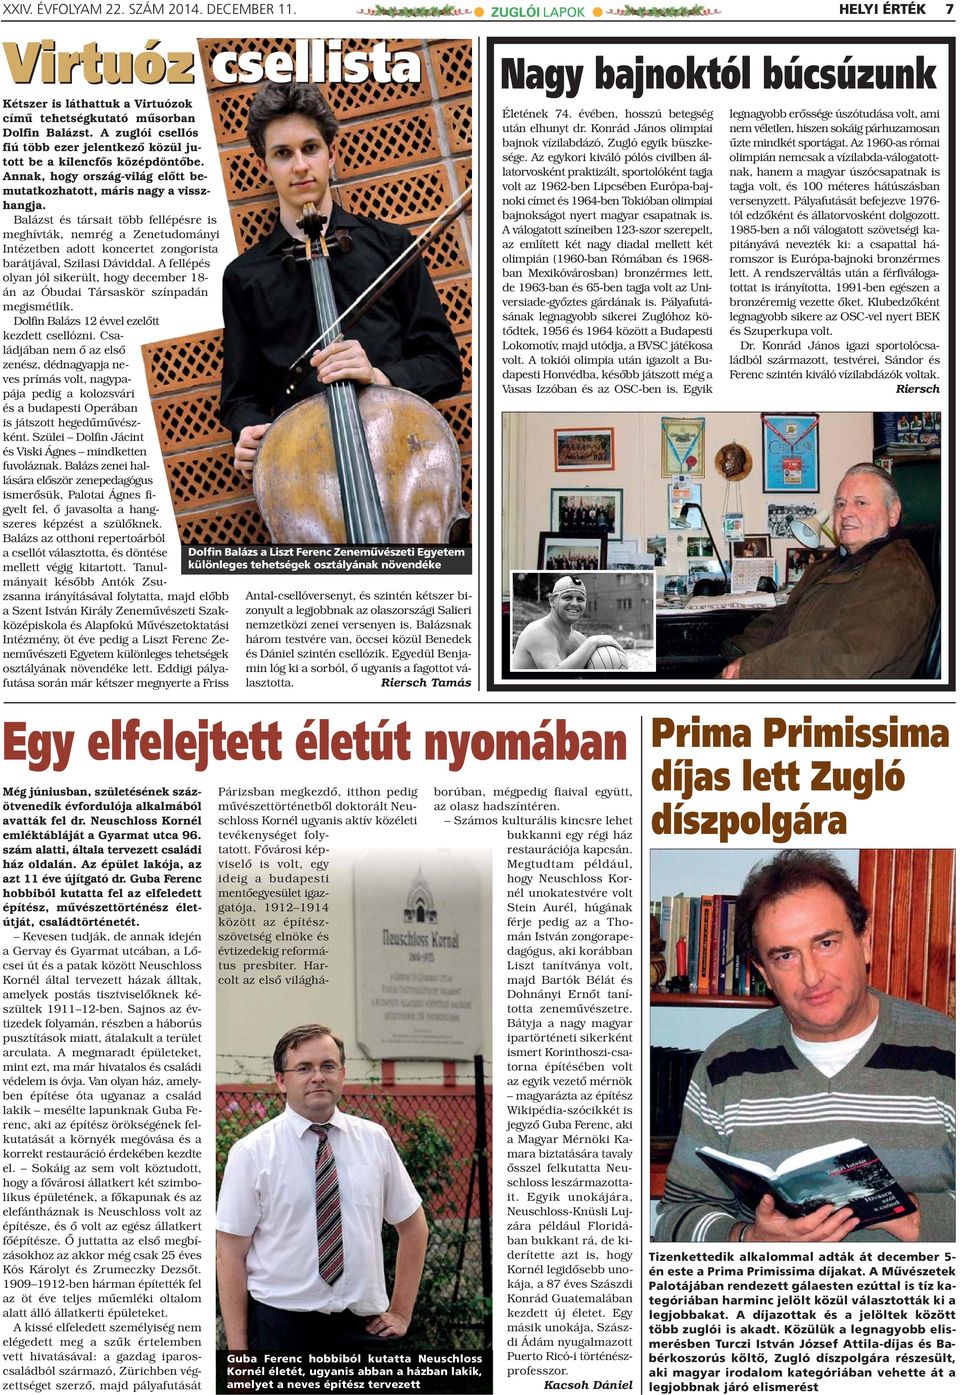 Balázst és társait több fellépésre is meghívták, nemrég a Zenetudományi Intézetben adott koncertet zongorista barátjával, Szilasi Dáviddal.